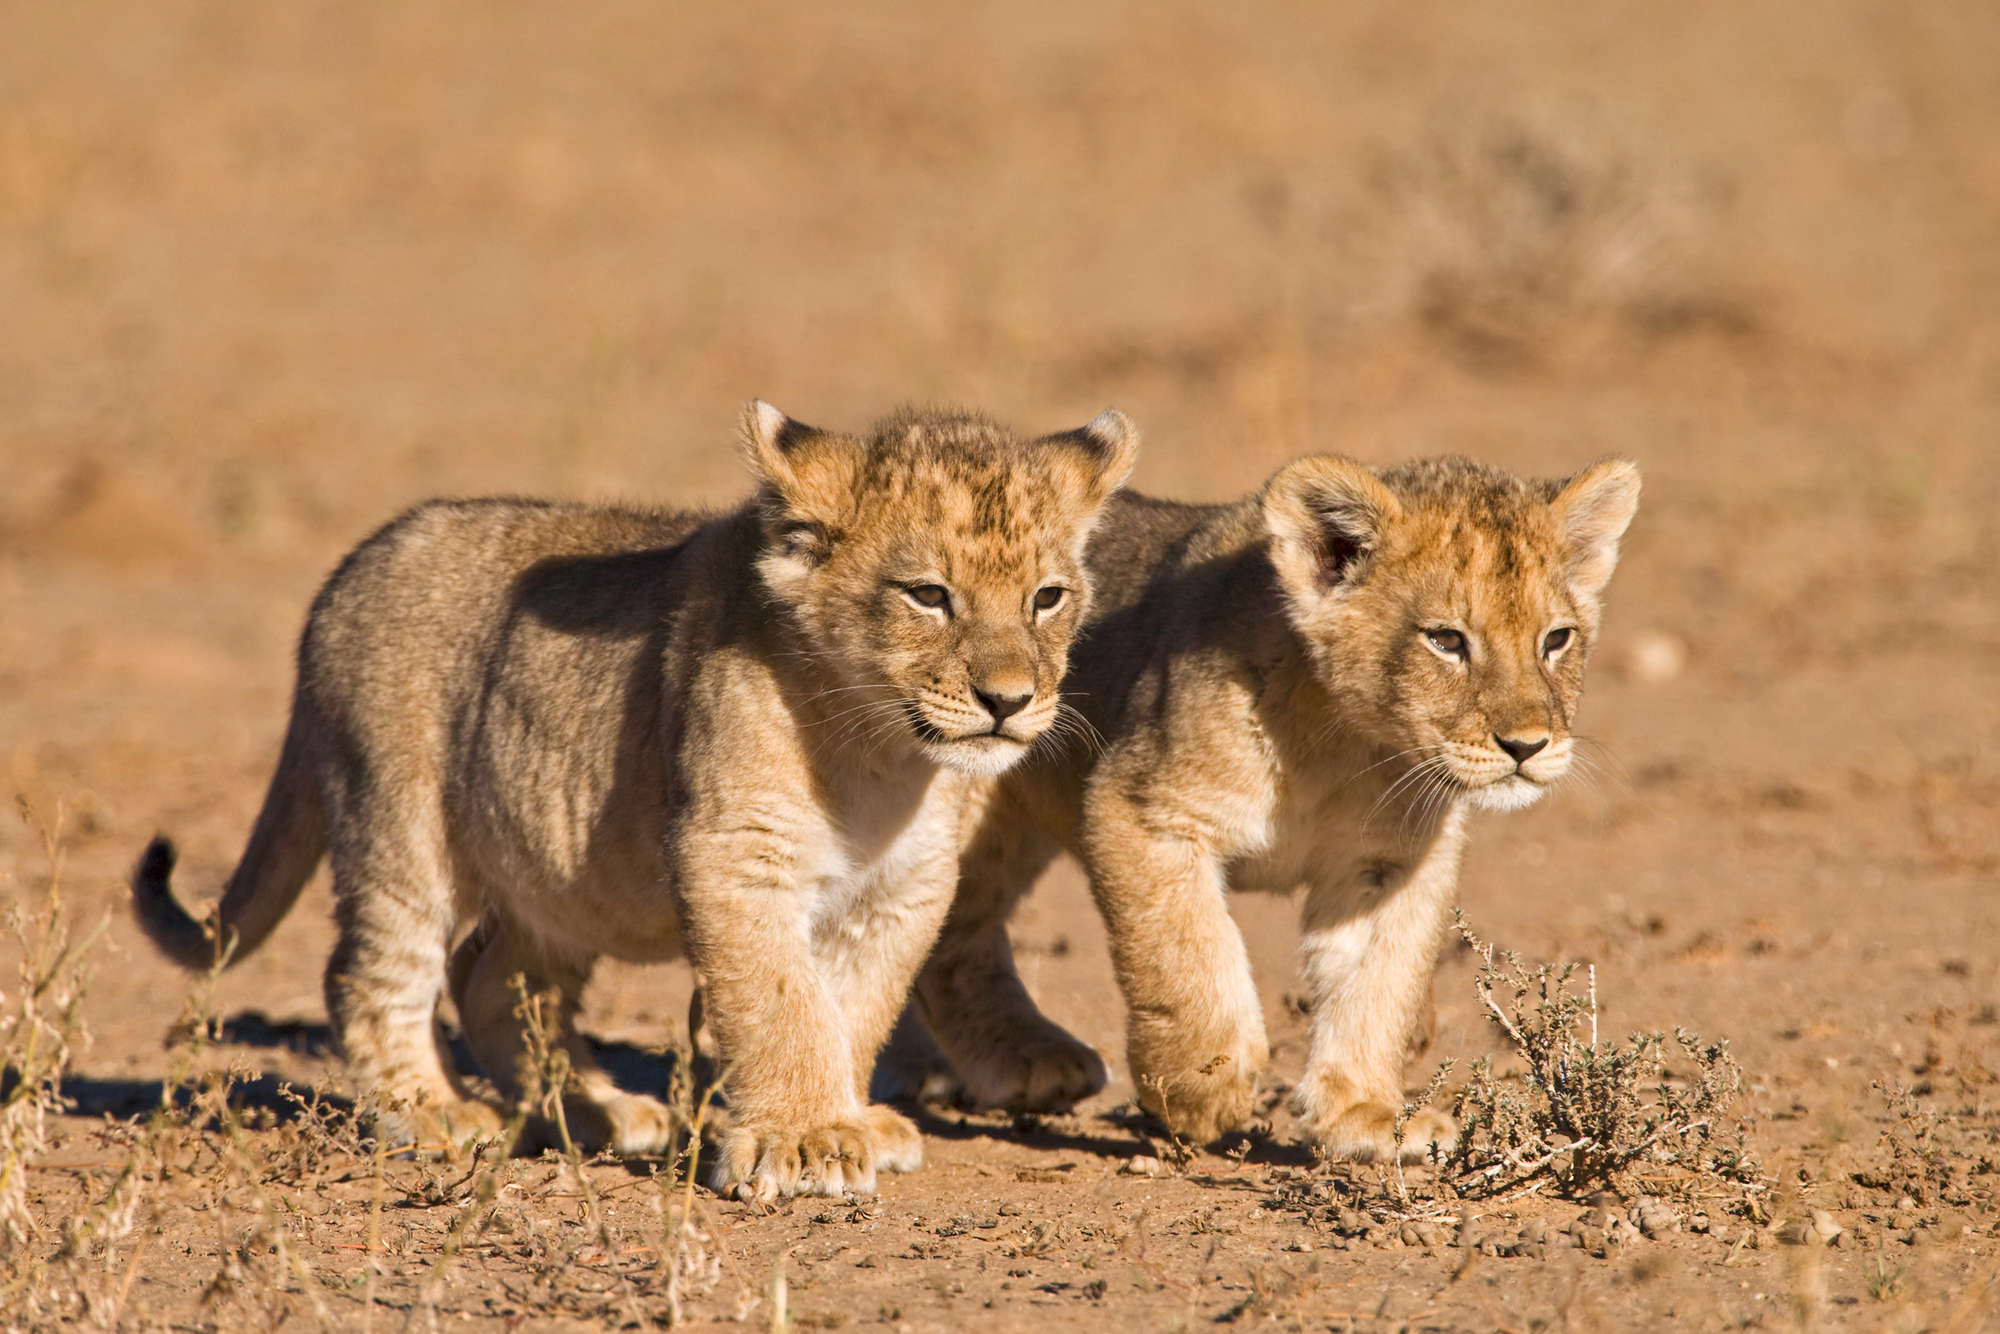             Löwen Fototapete mit zwei Jungen in Freiheit auf Perlmutt Glattvlies
        